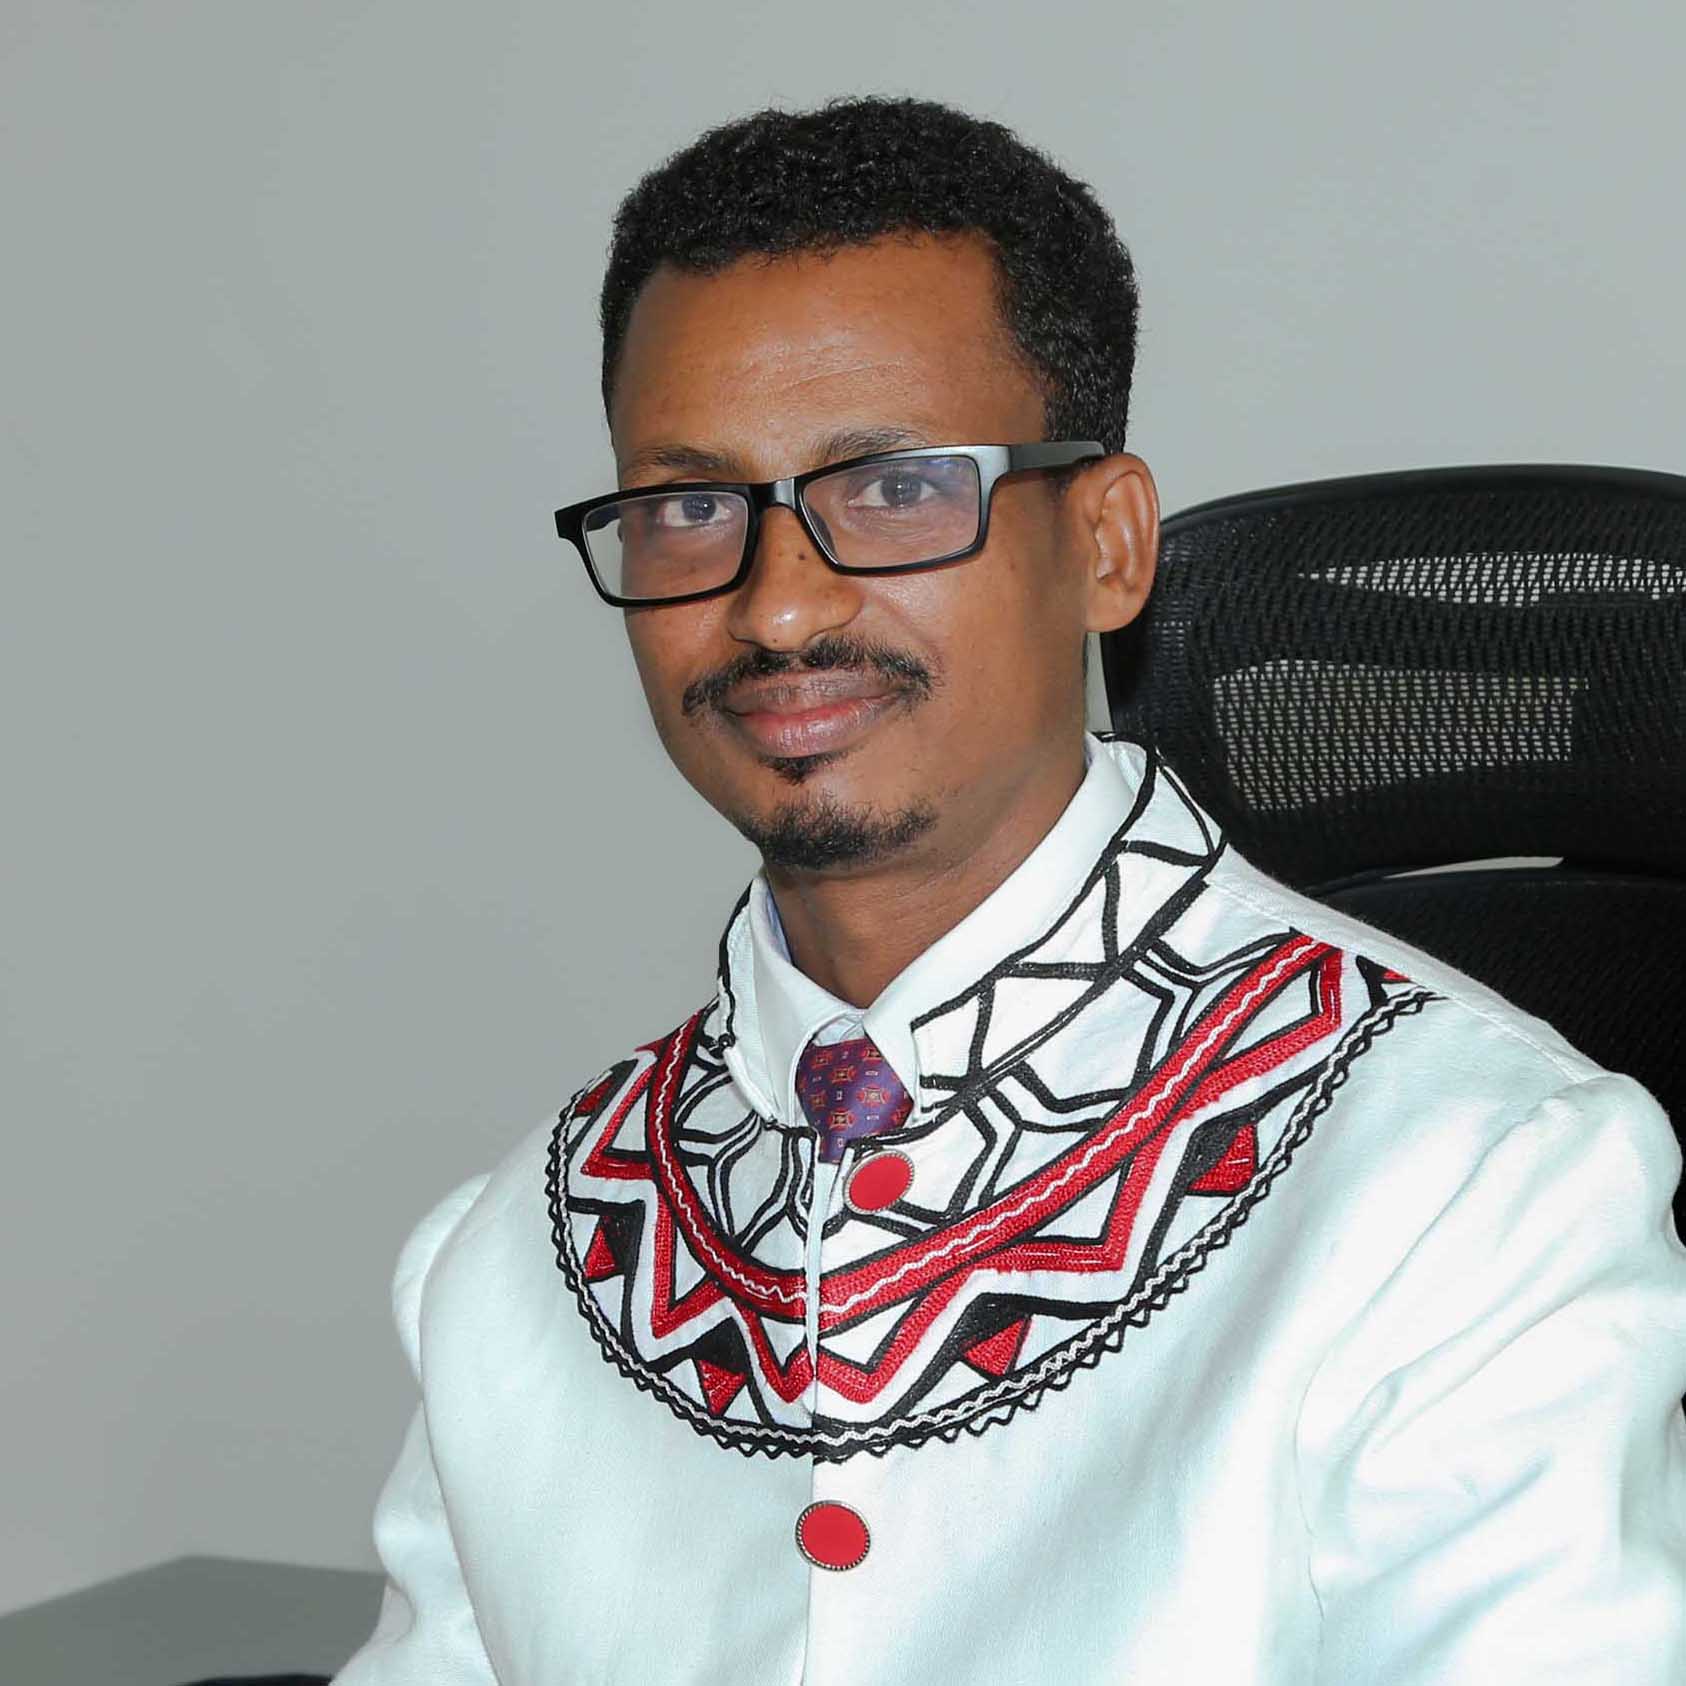 Dr. Mengistu Bekele